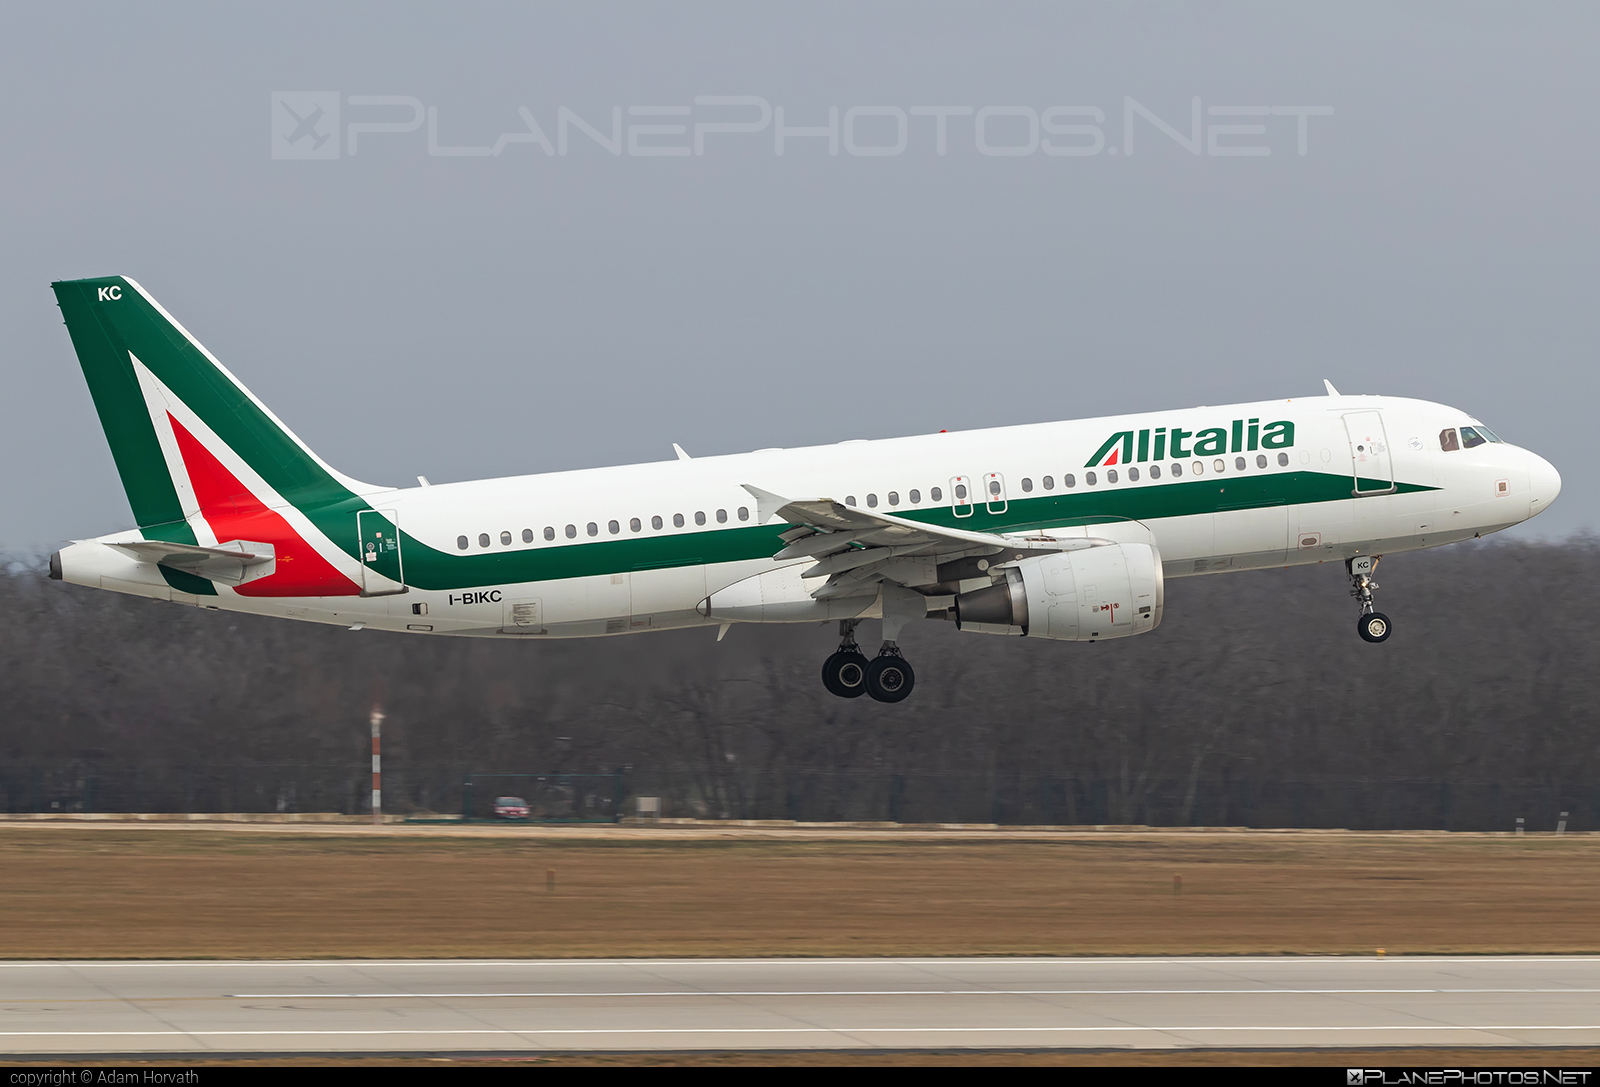 Airbus A320-214 - I-BIKC operated by Alitalia #a320 #a320family #airbus #airbus320 #alitalia